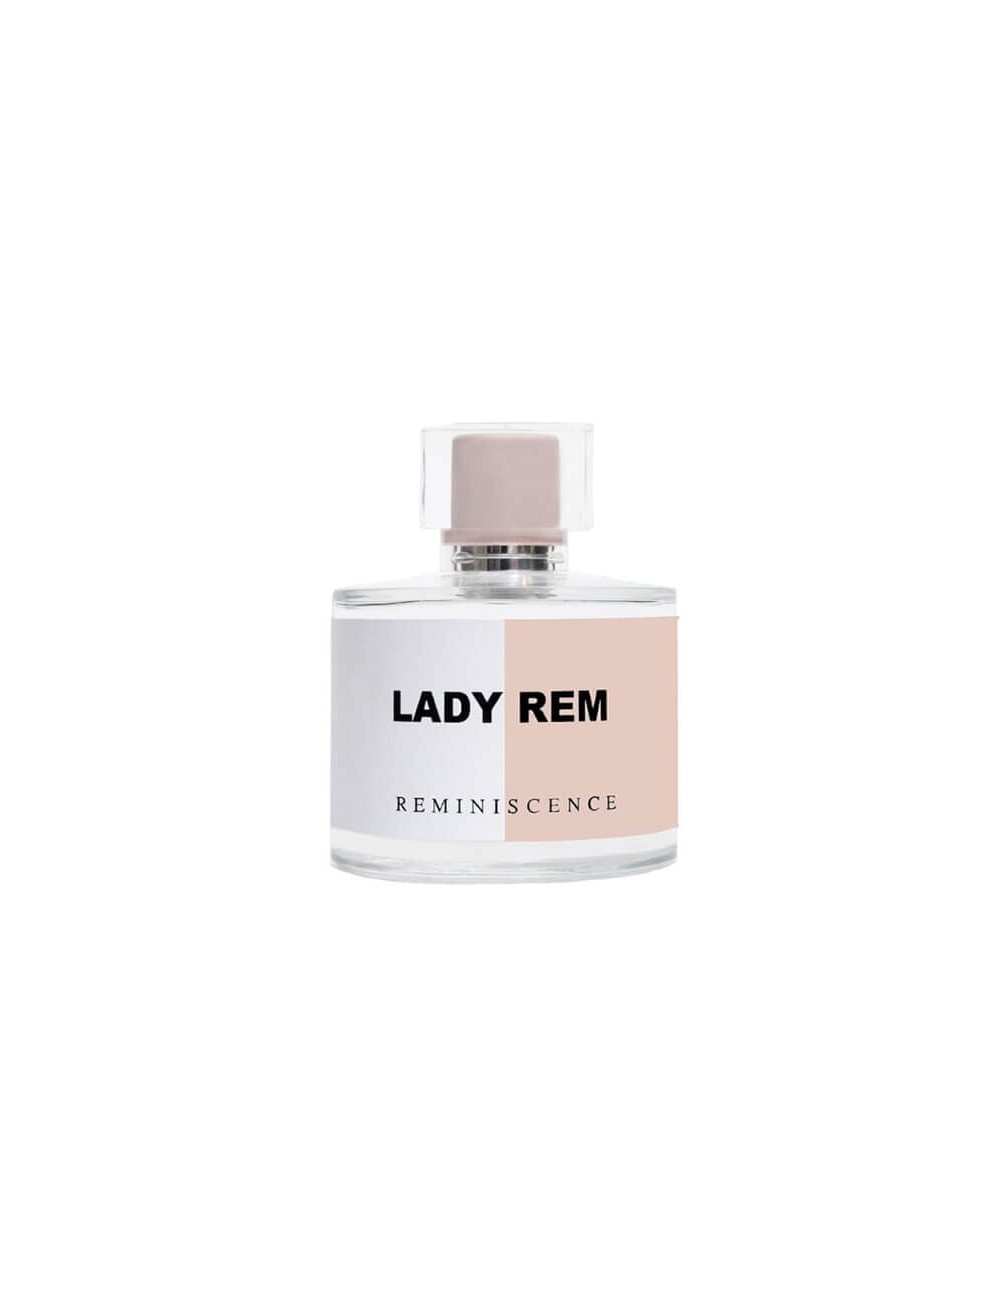 LADY REM eau de parfum vapo